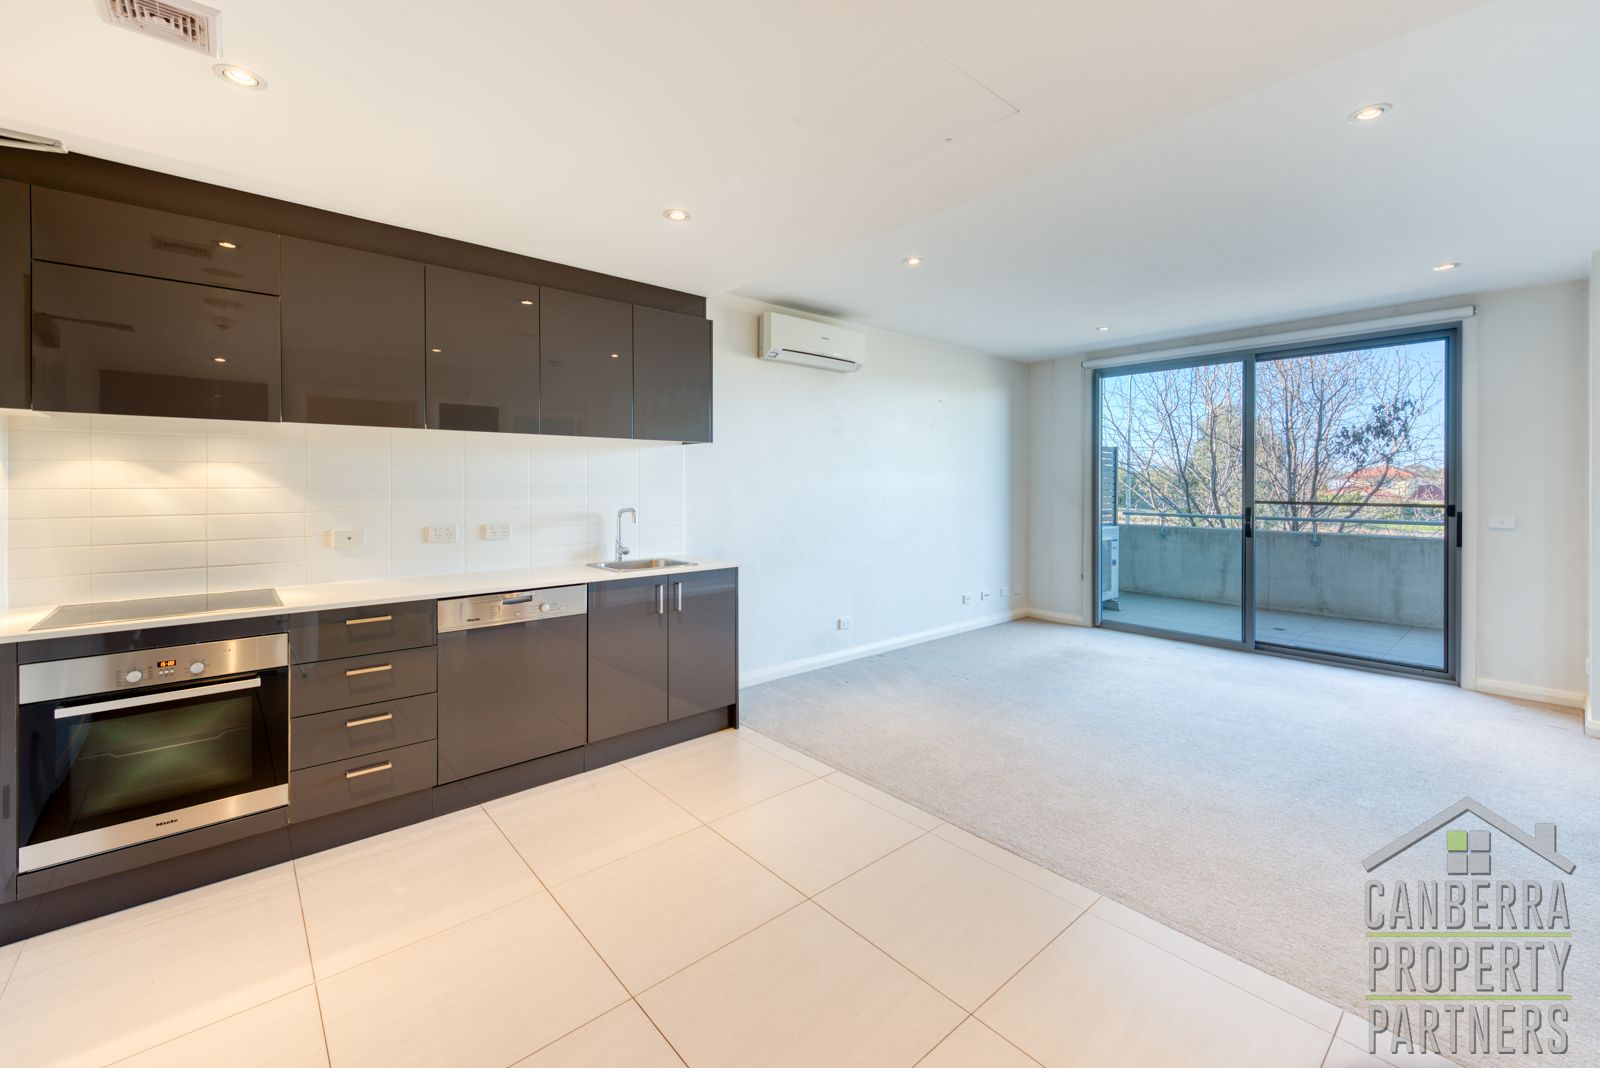 1 bedrooms Apartment / Unit / Flat in 62/301 Flemington Road FRANKLIN ACT, 2913